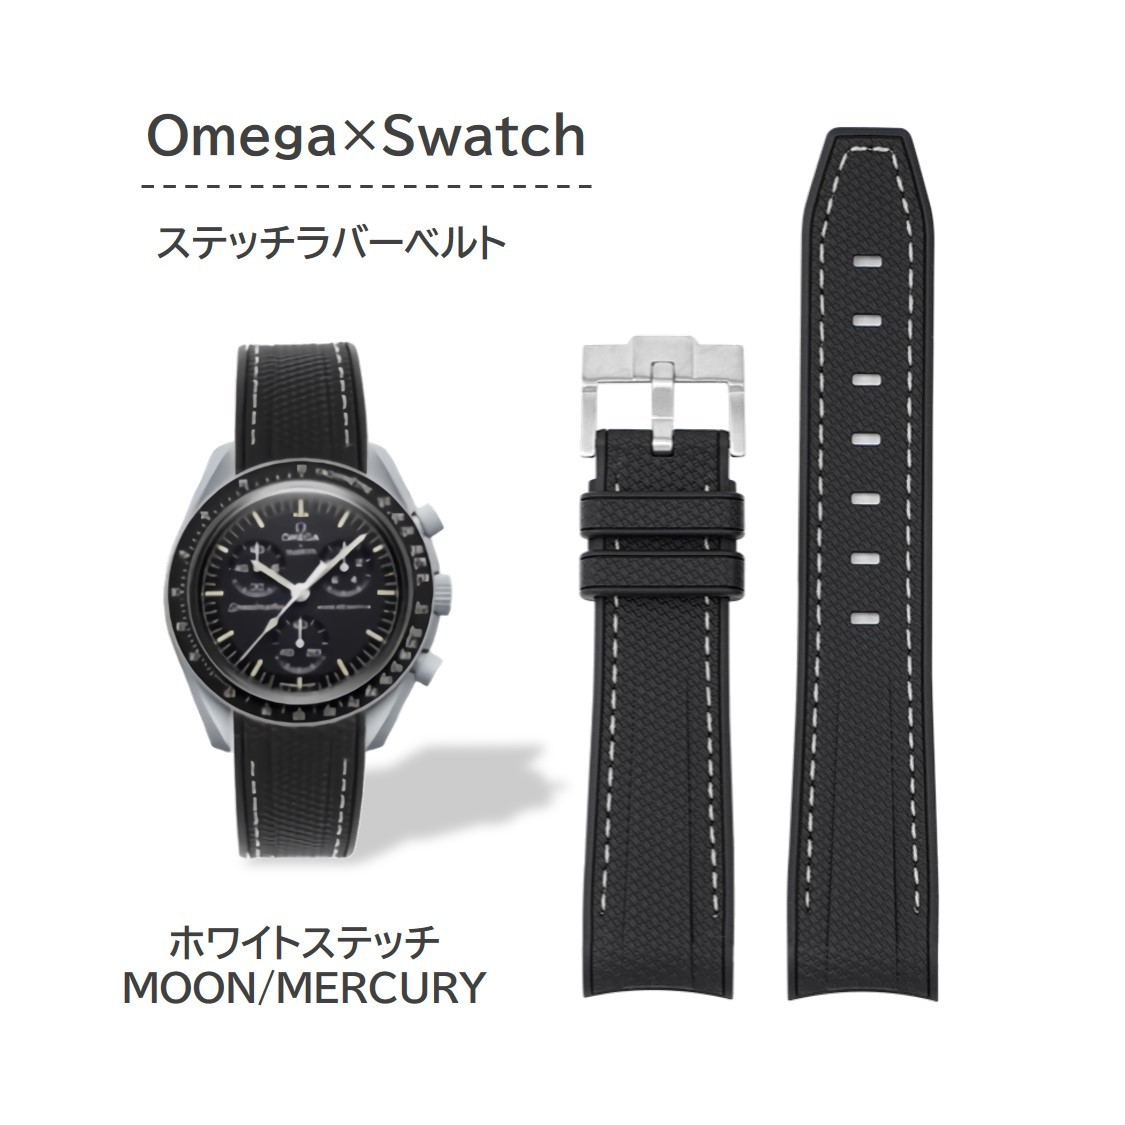 Omega×Swatch для   стежок  резина  ремень   белый  стежок 